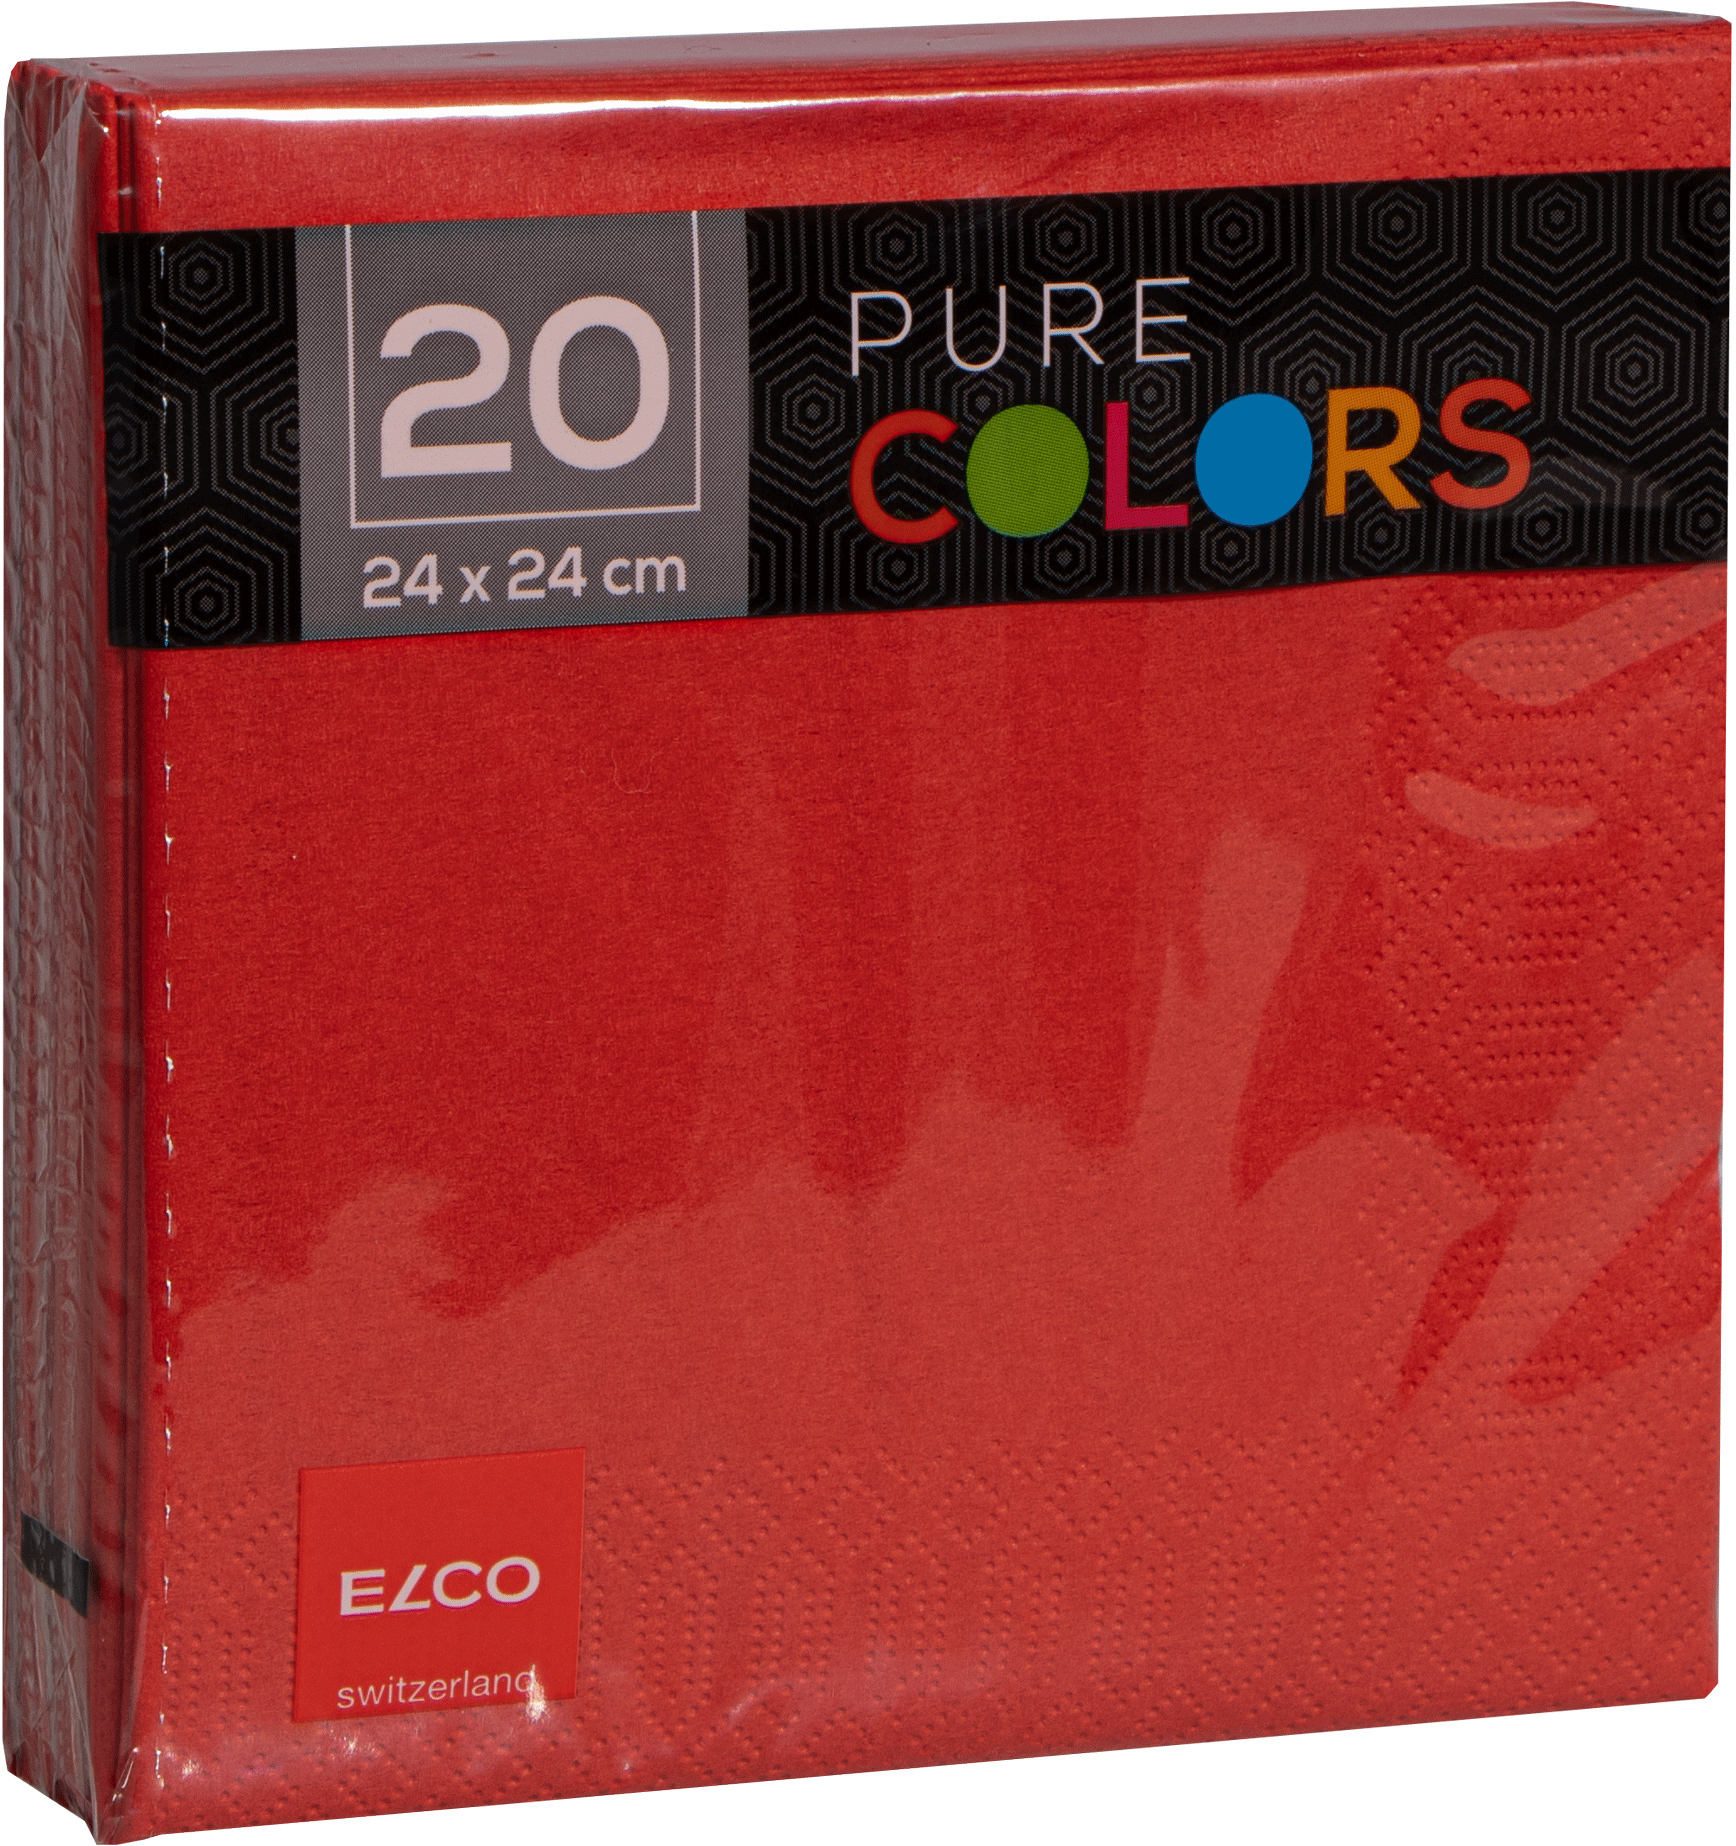 ELCO Serviettes tissue 24x24cm PC234020-020 3 plis, rouge 20pcs. 3 plis, rouge 20pcs.